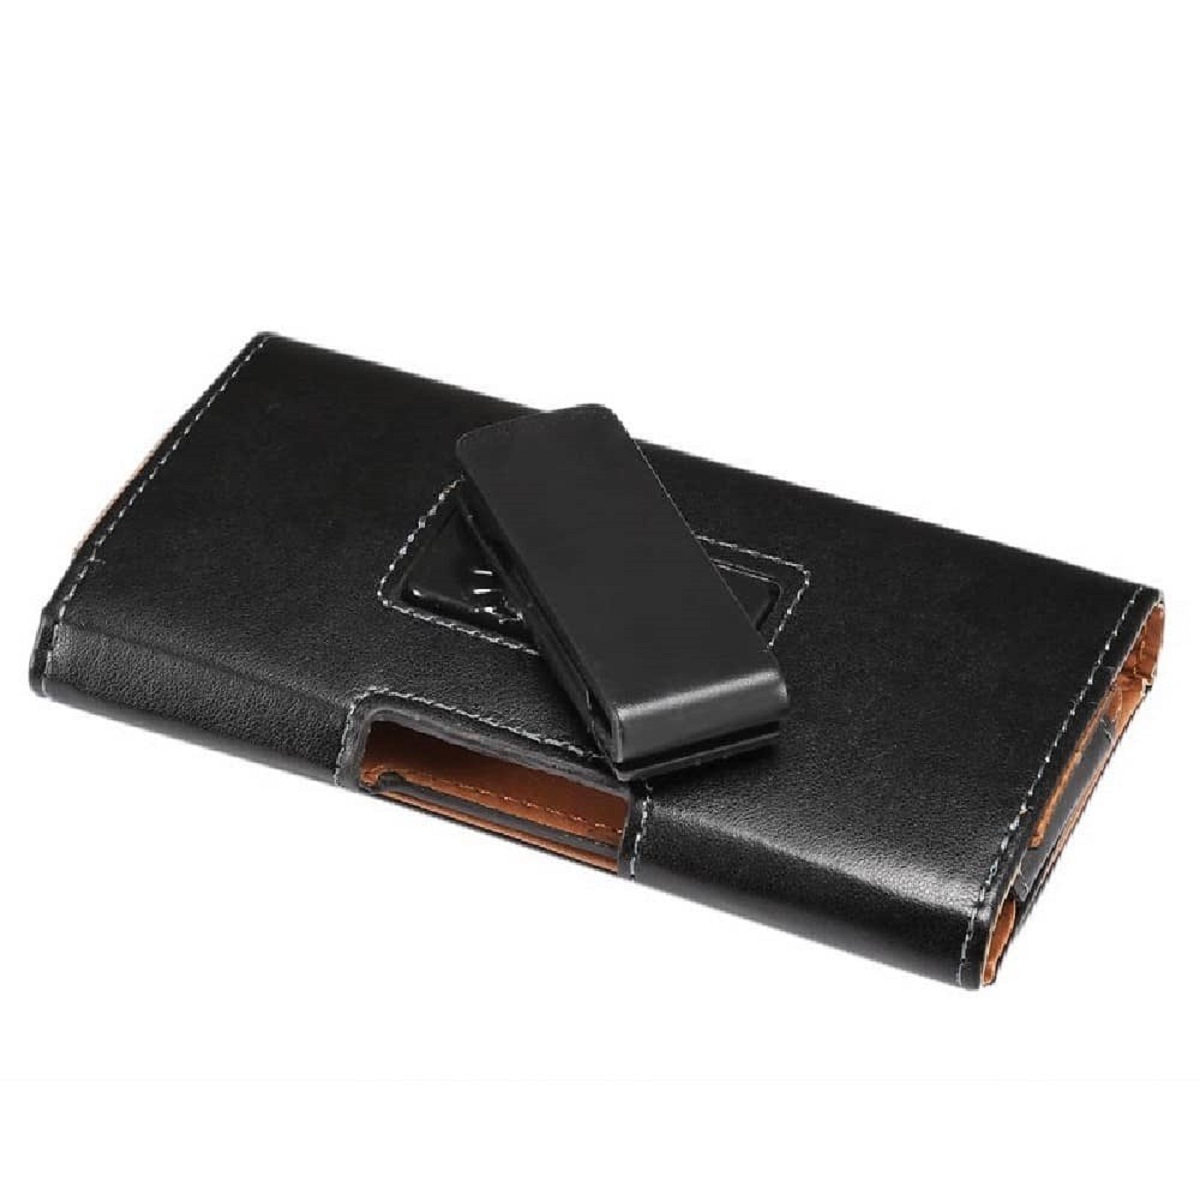 縮圖 1  - for Vivo Y55 Executive Holster Leather Case Belt Clip Rotary 360 Magnetic Clo...